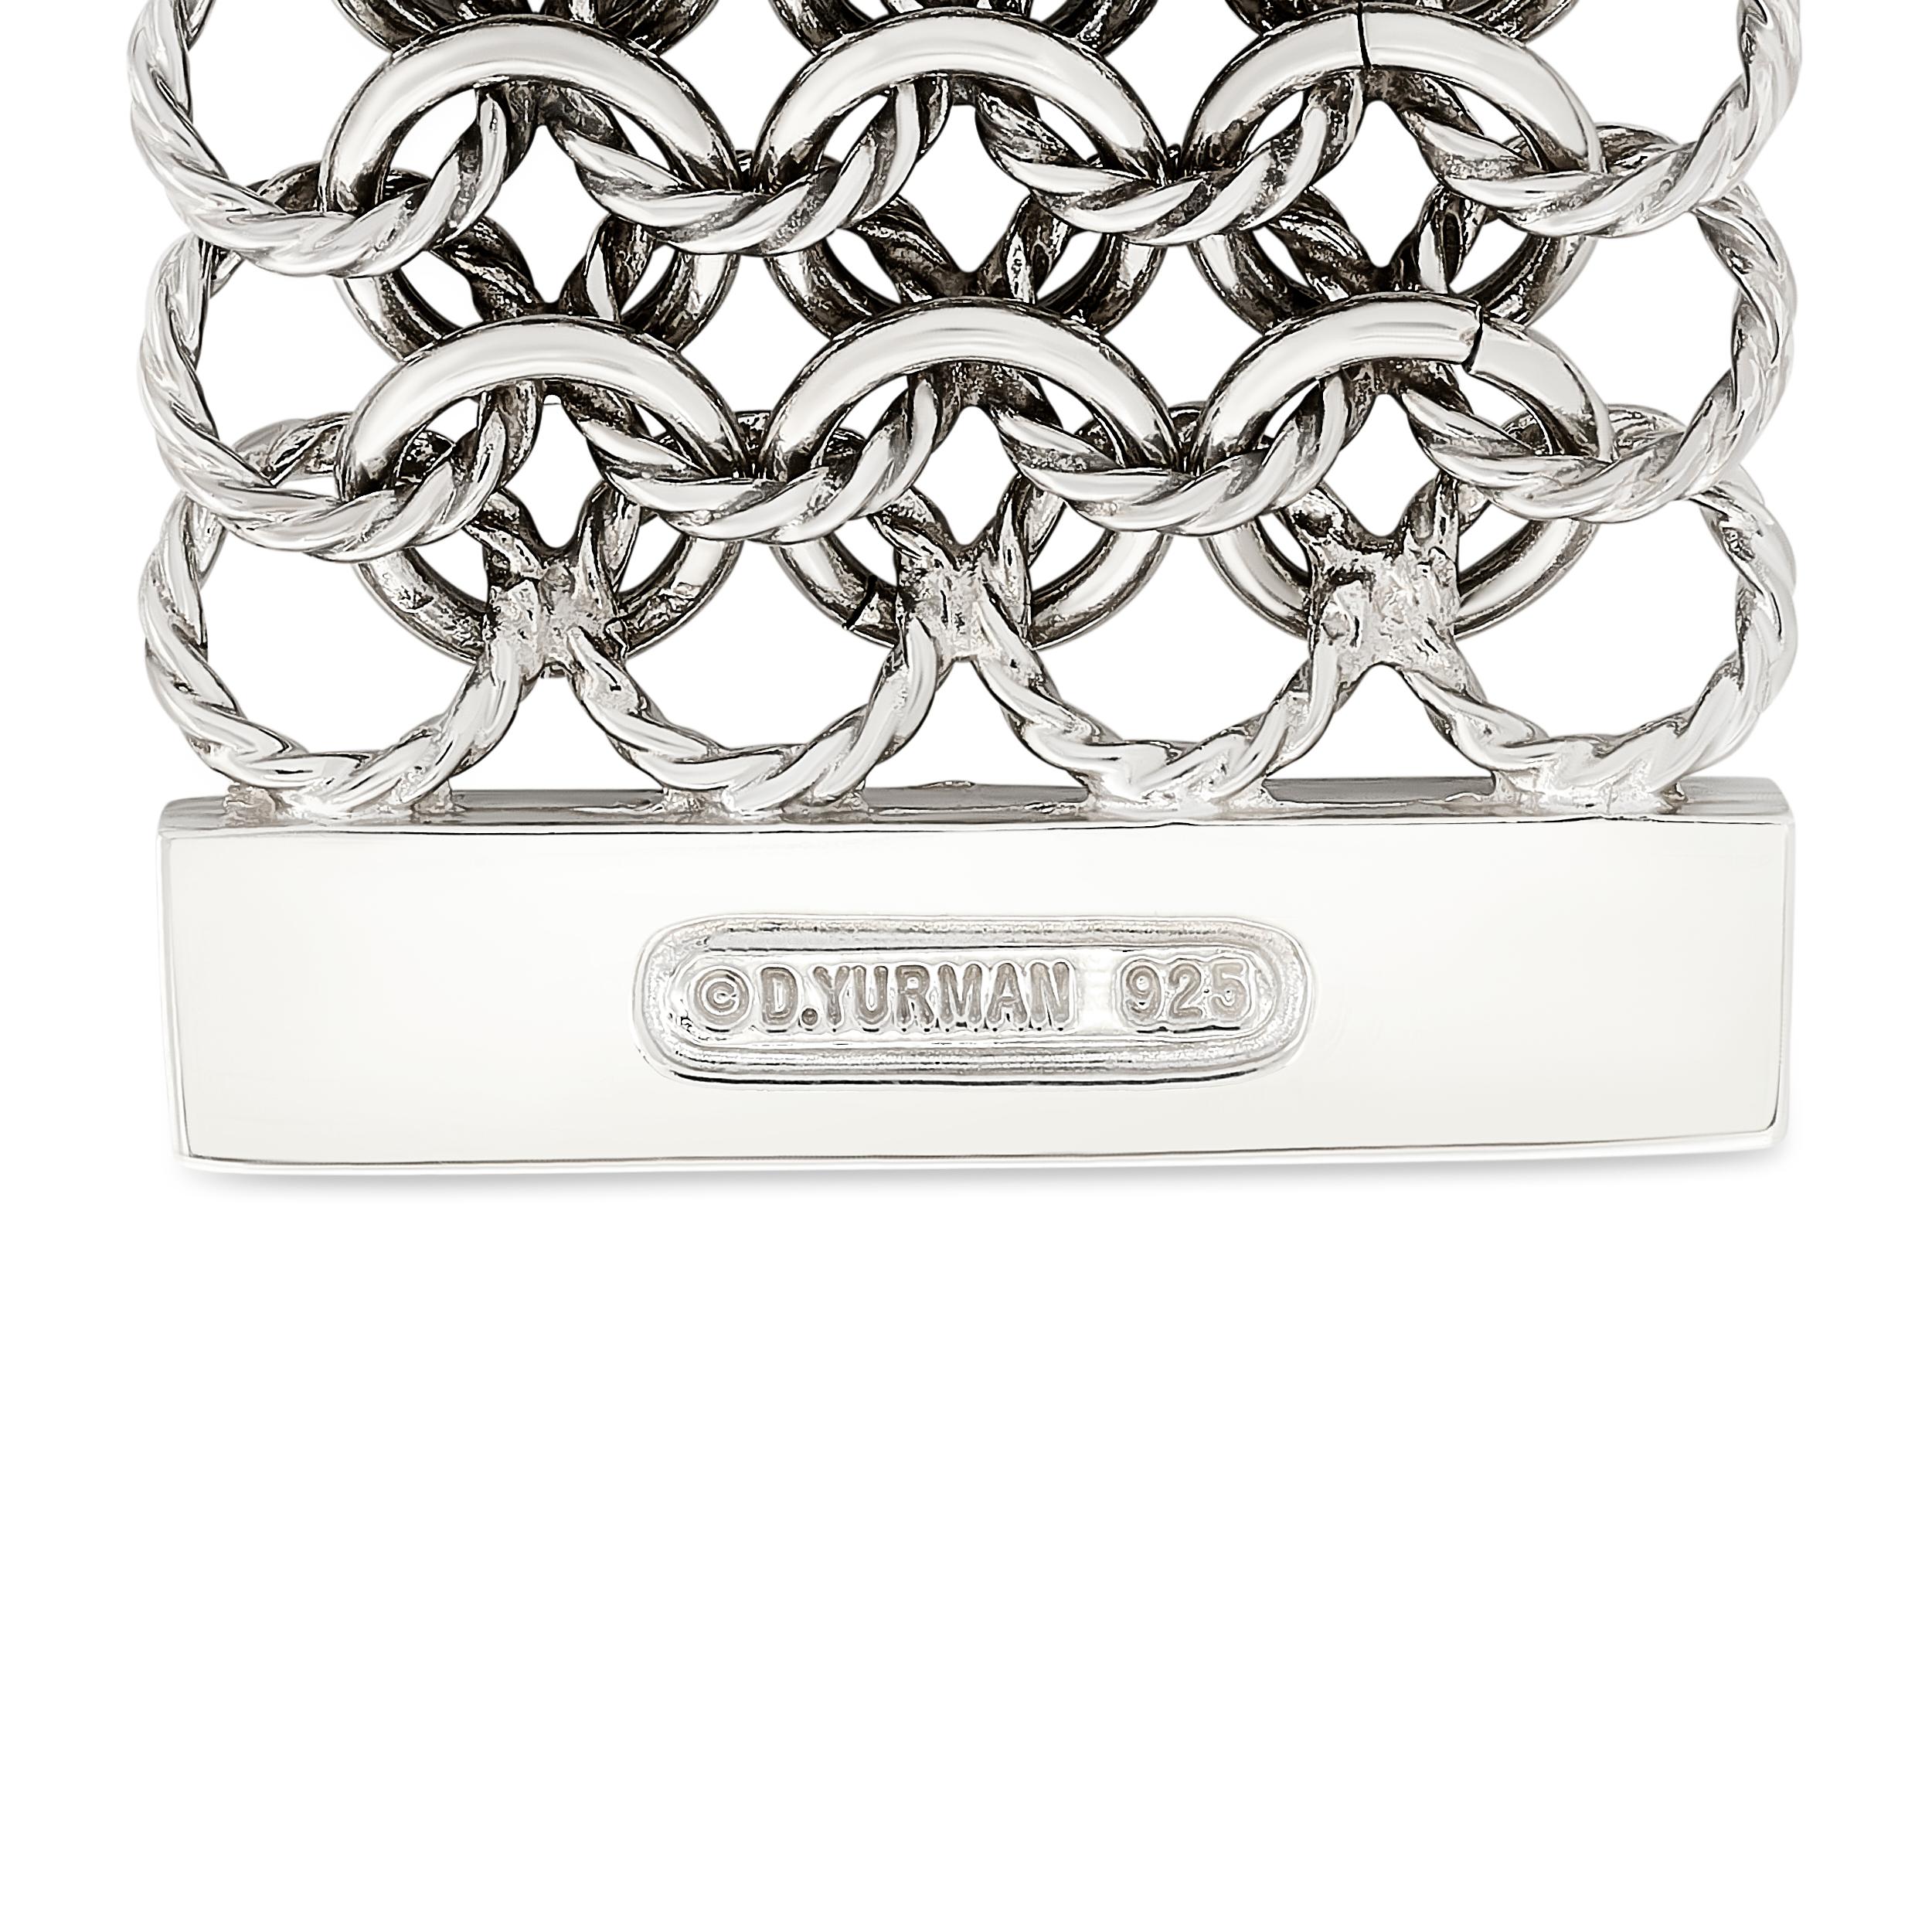 Das elegante David Yurman-Sterlingsilberarmband mit schillernden Diamanten strahlt zeitlose Raffinesse und raffinierten Luxus aus. Das Armband hat 45 runde Diamanten mit einem Gewicht von ca. 1,00 Karat, Qualität VS und Farbe von H-J. 

Gestempelt